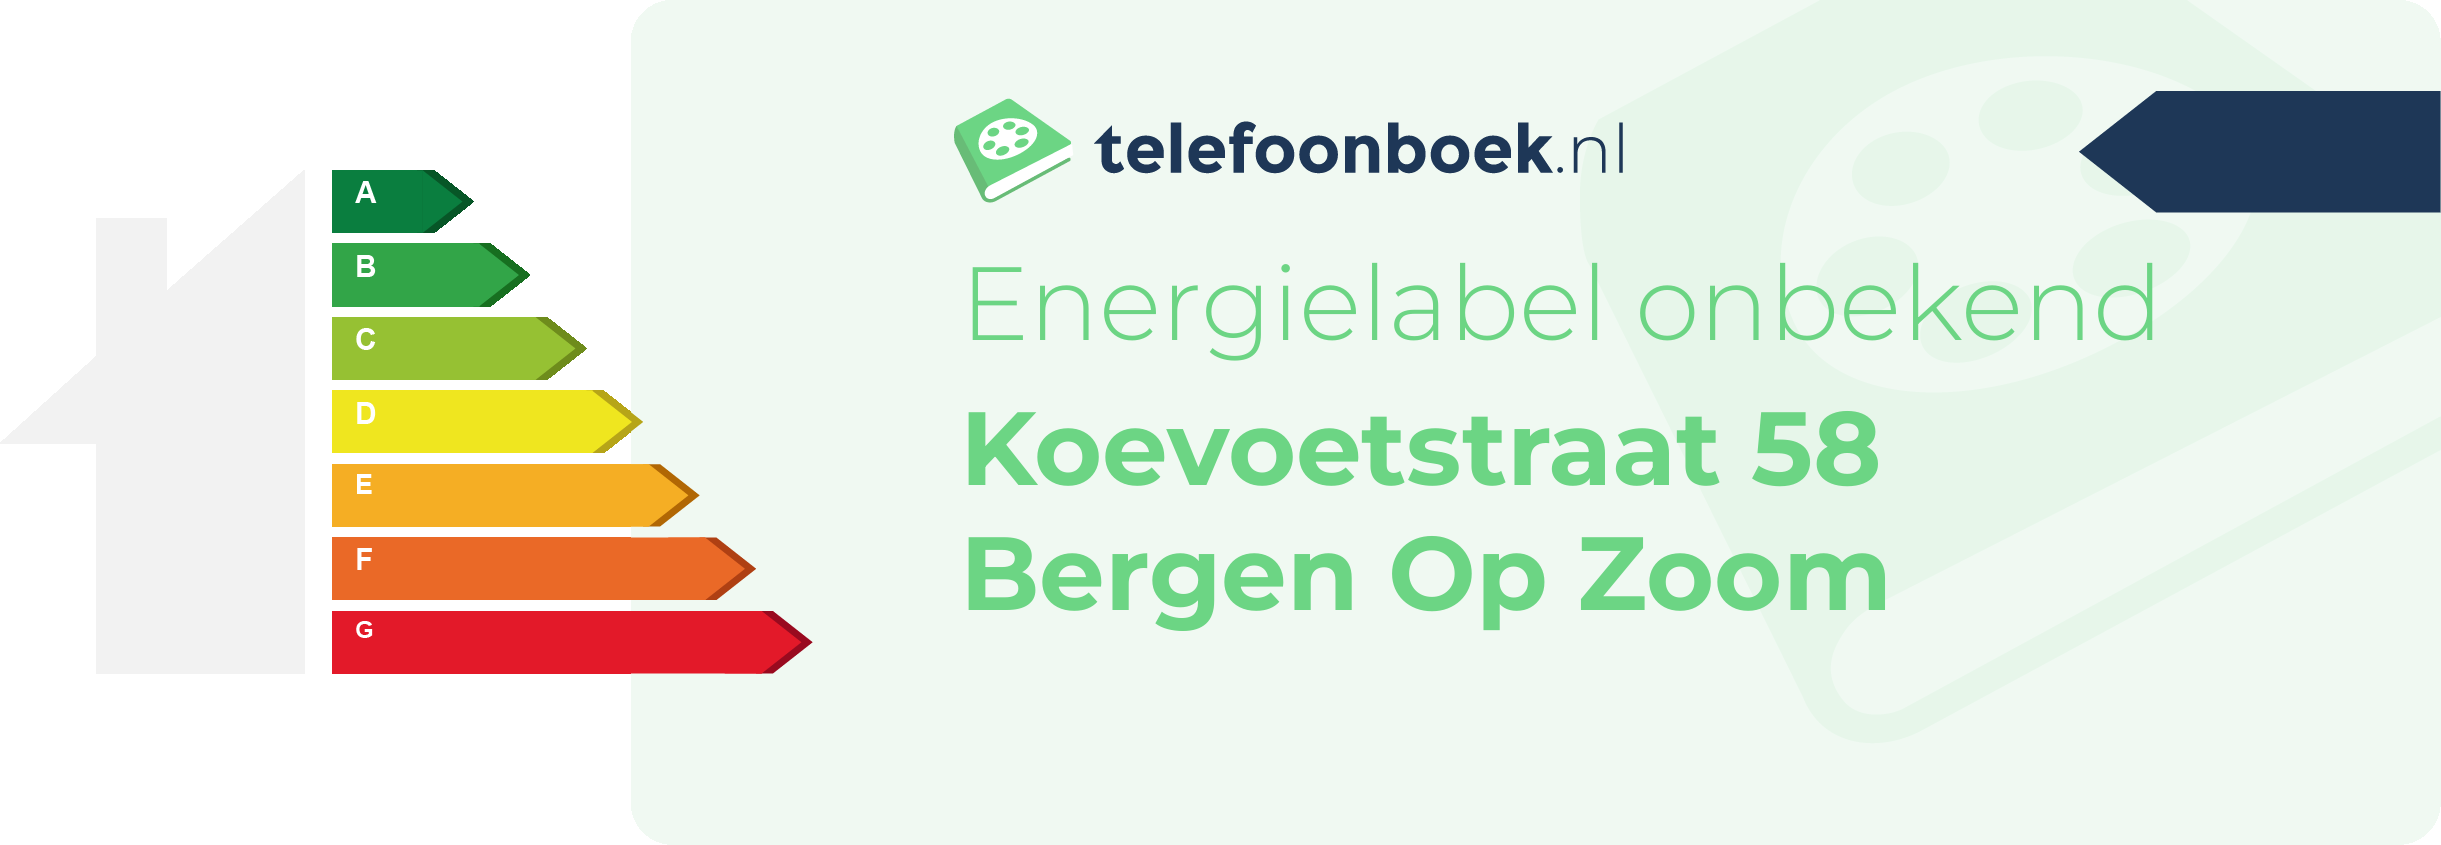 Energielabel Koevoetstraat 58 Bergen Op Zoom